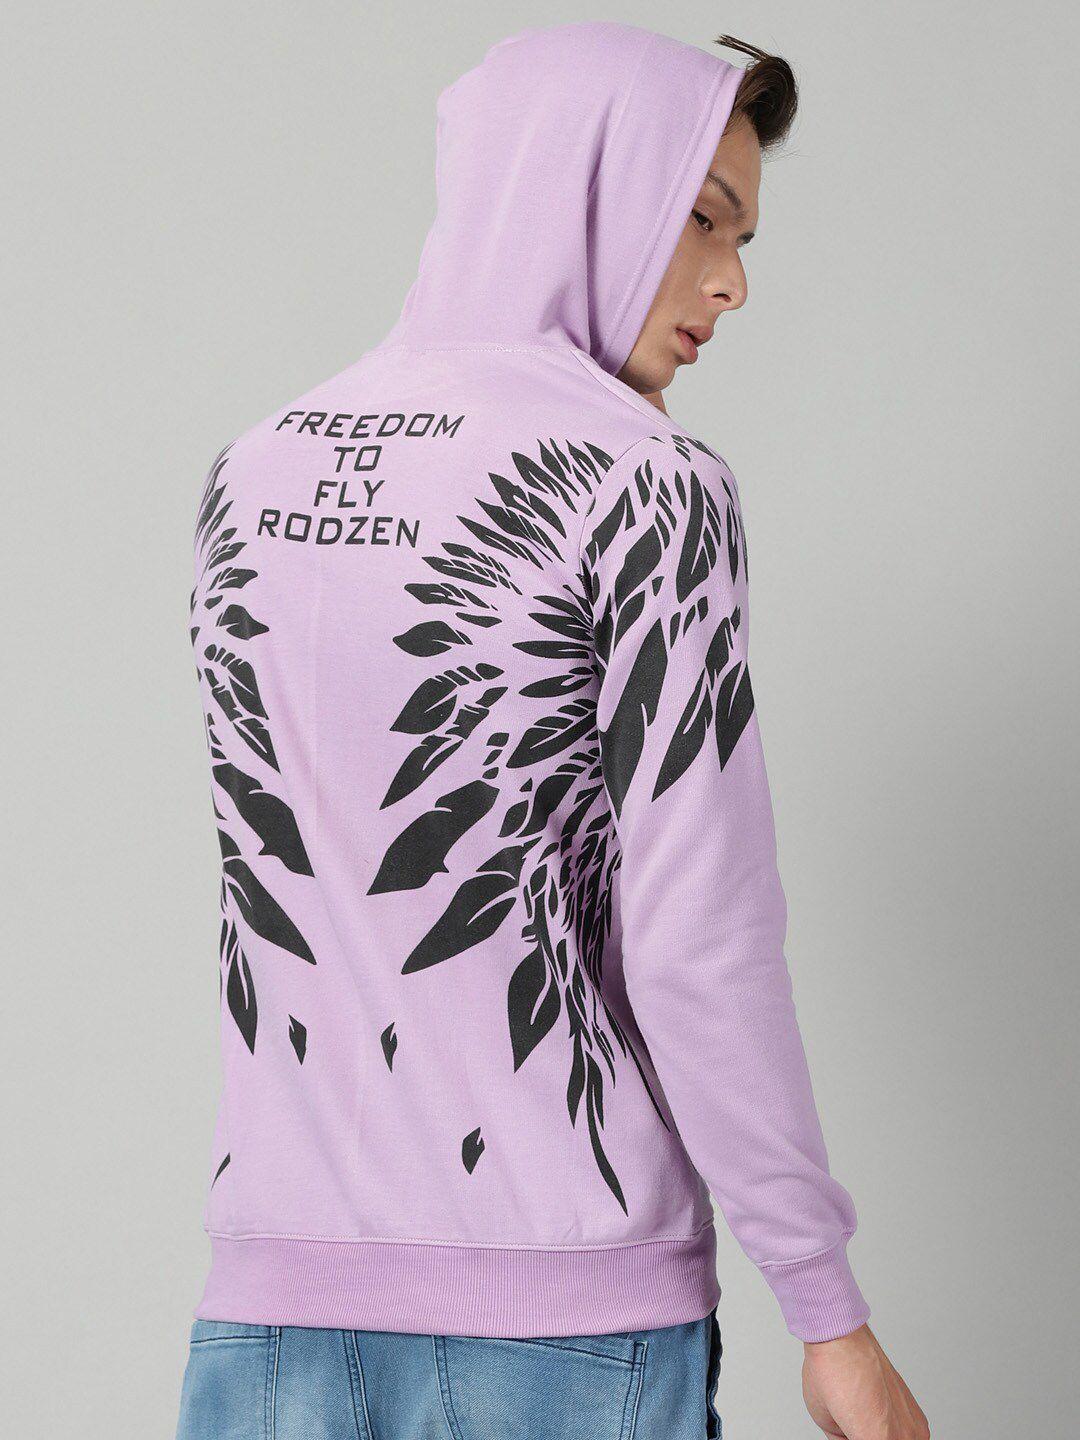 rodzen graphic printed hooded fleece pullover